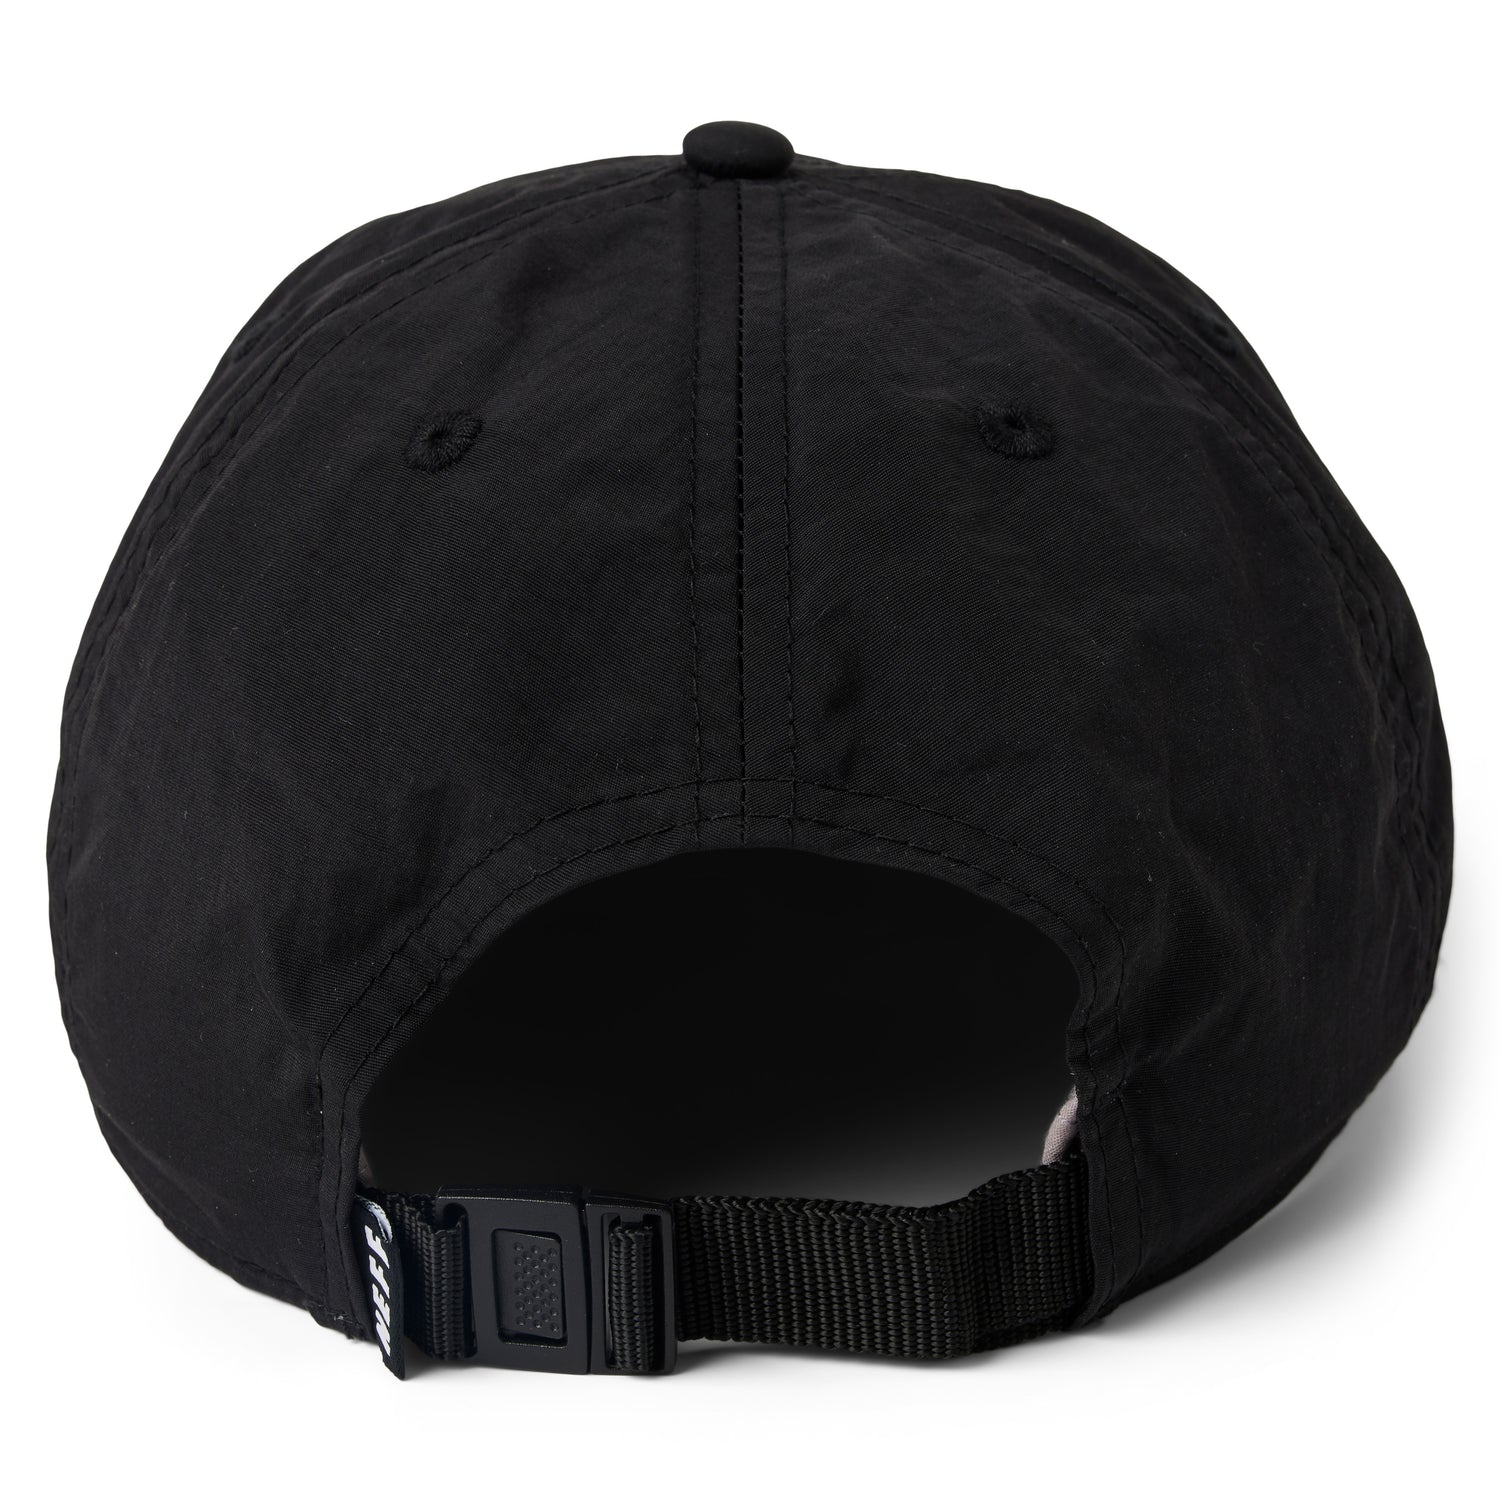 FLASHDANCE ADJUSTABLE HAT - BLACK